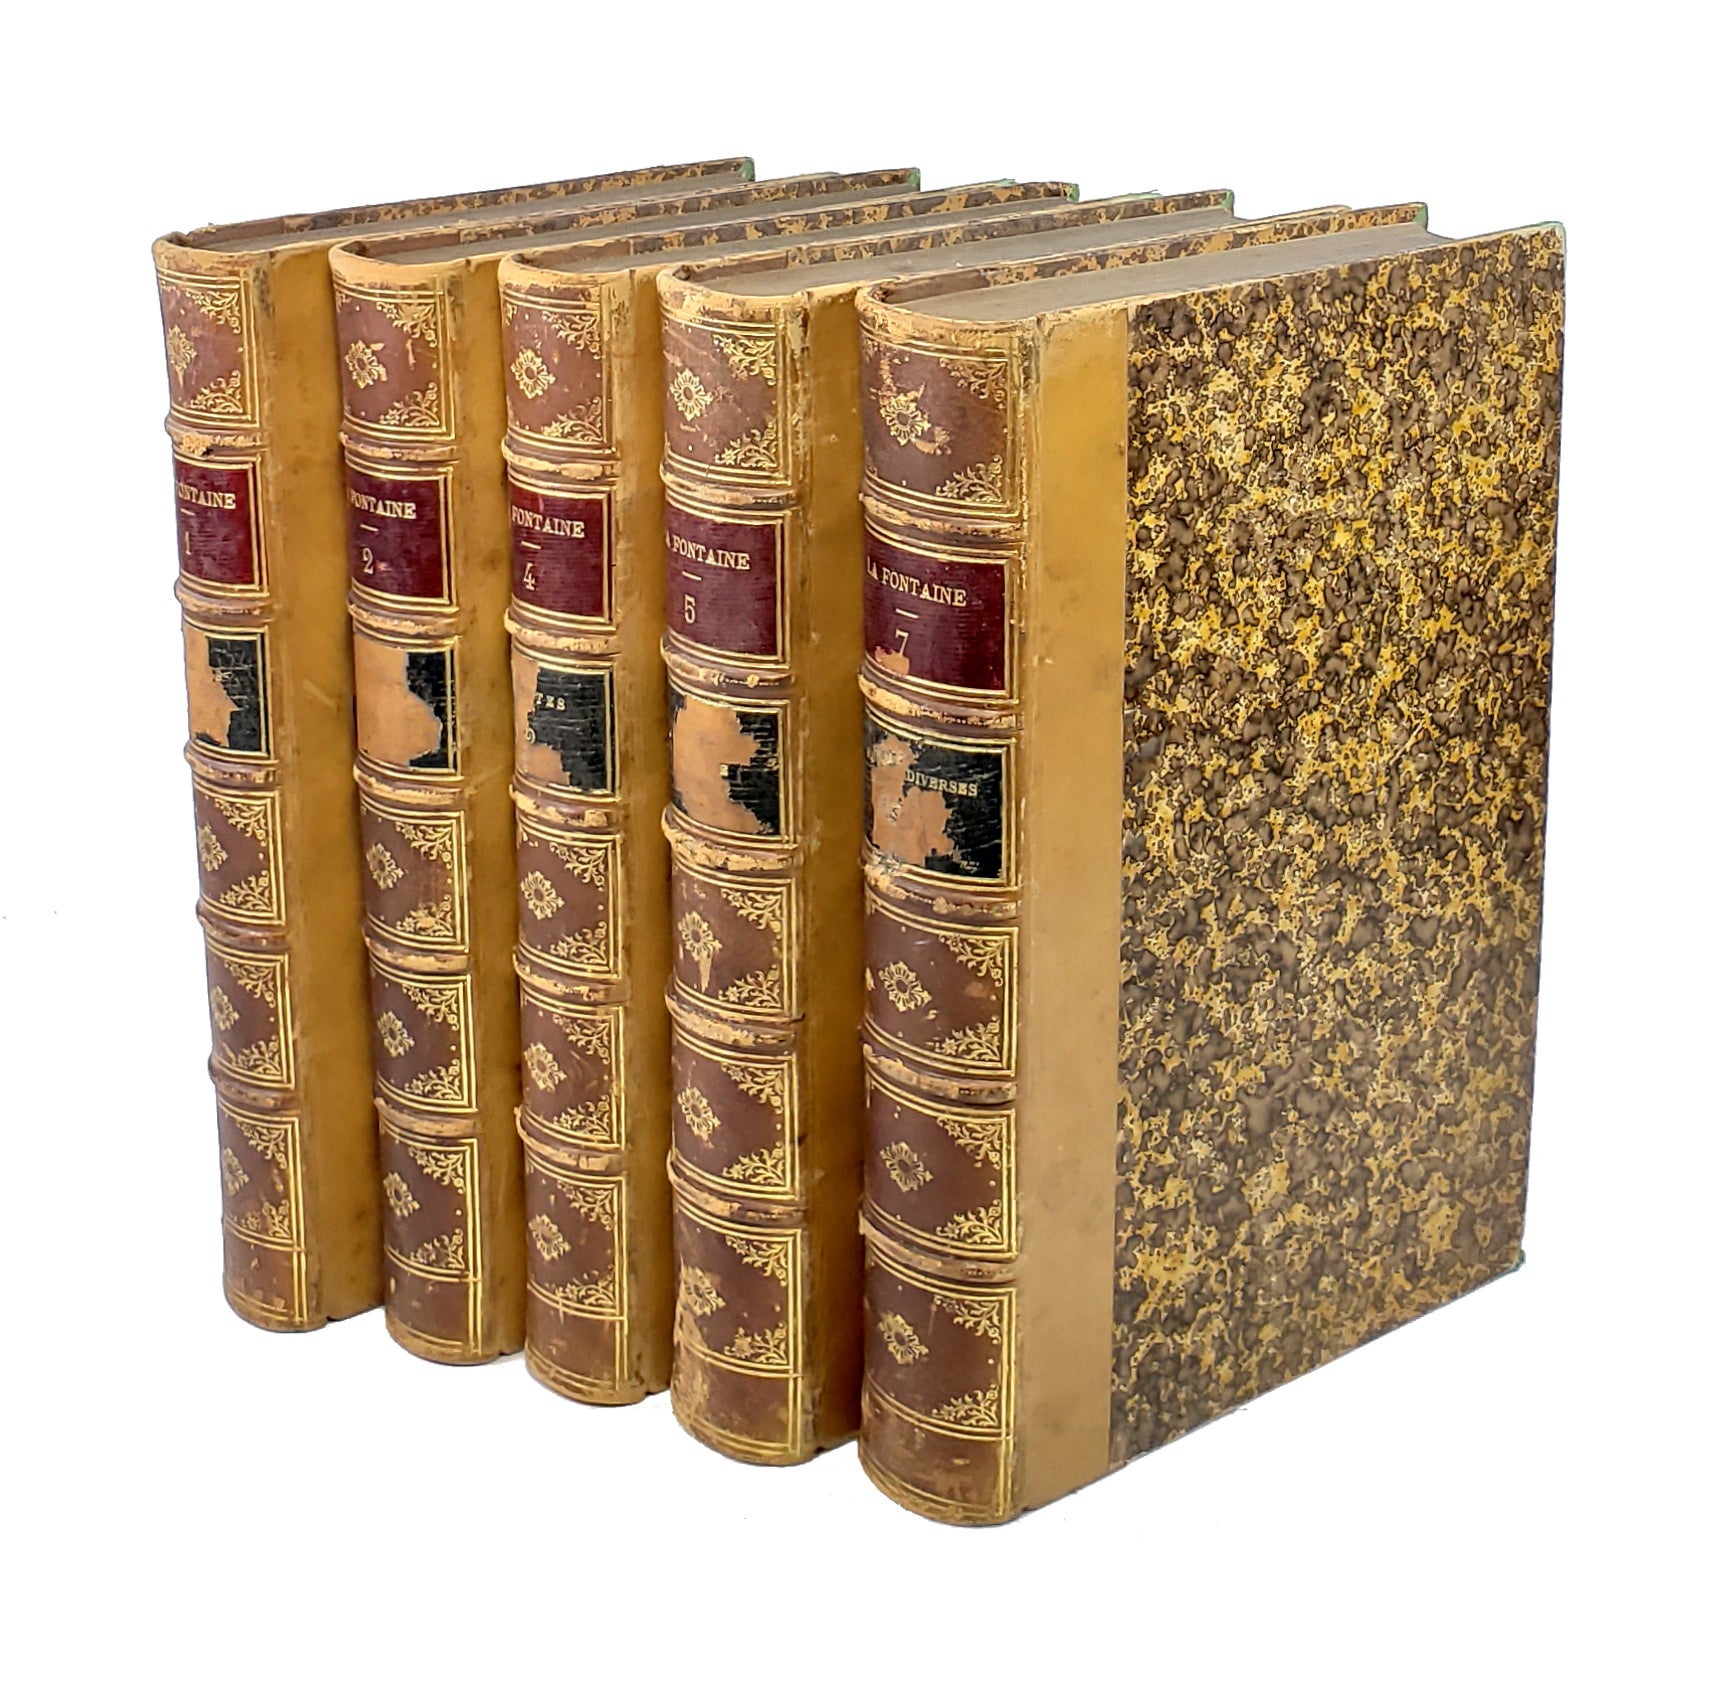 Oeuvres Completes de La Fontaine Partial set - Vols 1, 2, 4, 5, & 7 by Jean  de La Fontaine, M. Louis Moland, ed on Capitol Hill Books